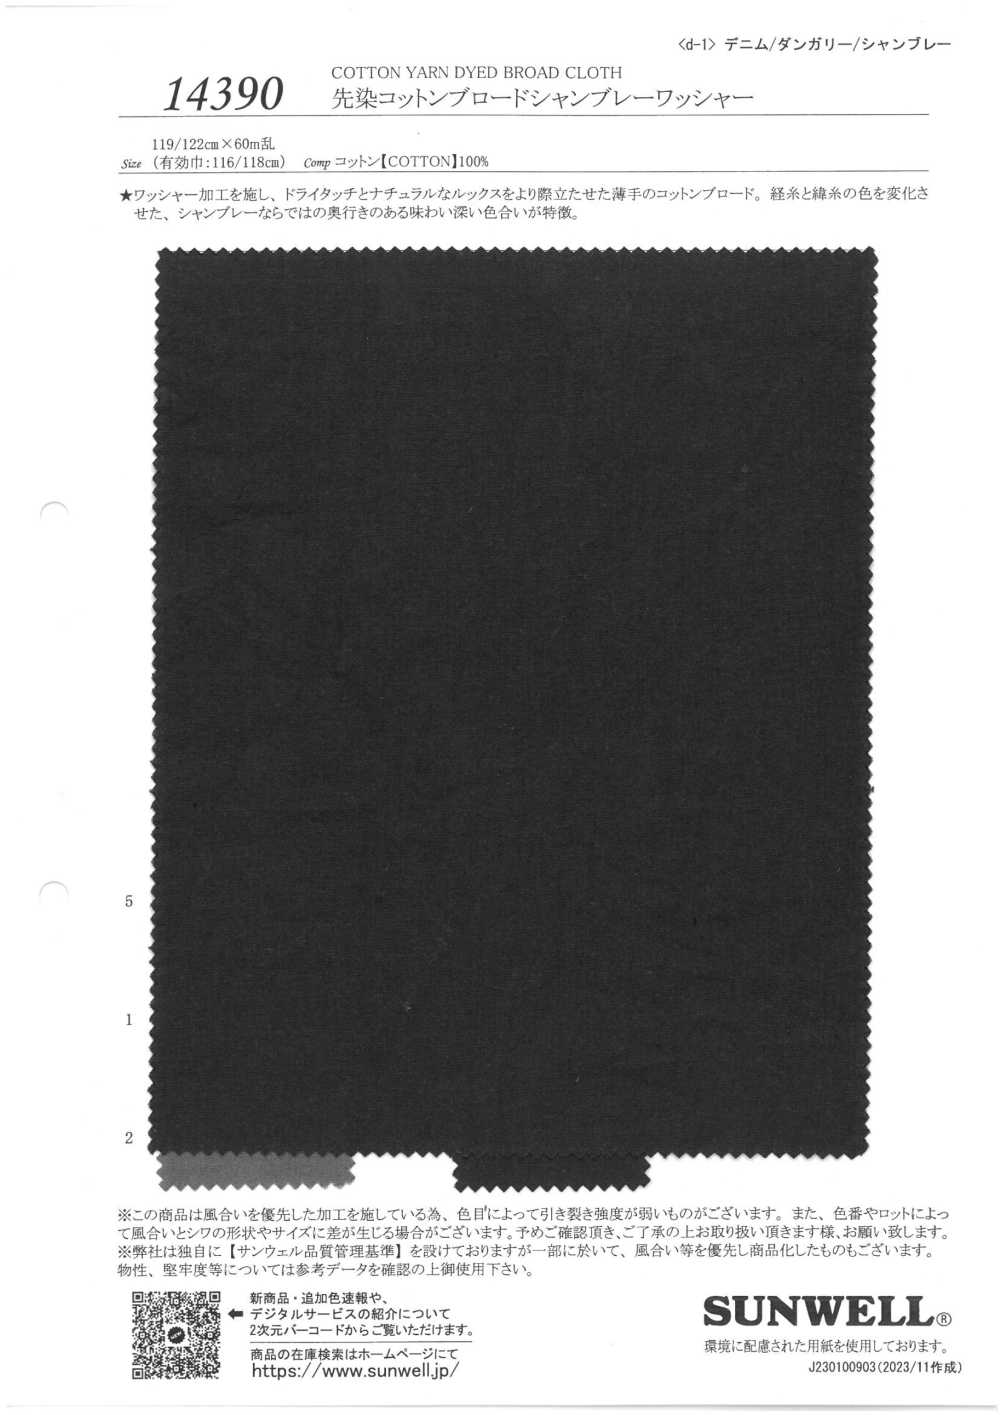 14390 Garngefärbte Breittuch-Baumwoll-Chambray-Waschmaschinenverarbeitung[Textilgewebe] SUNWELL